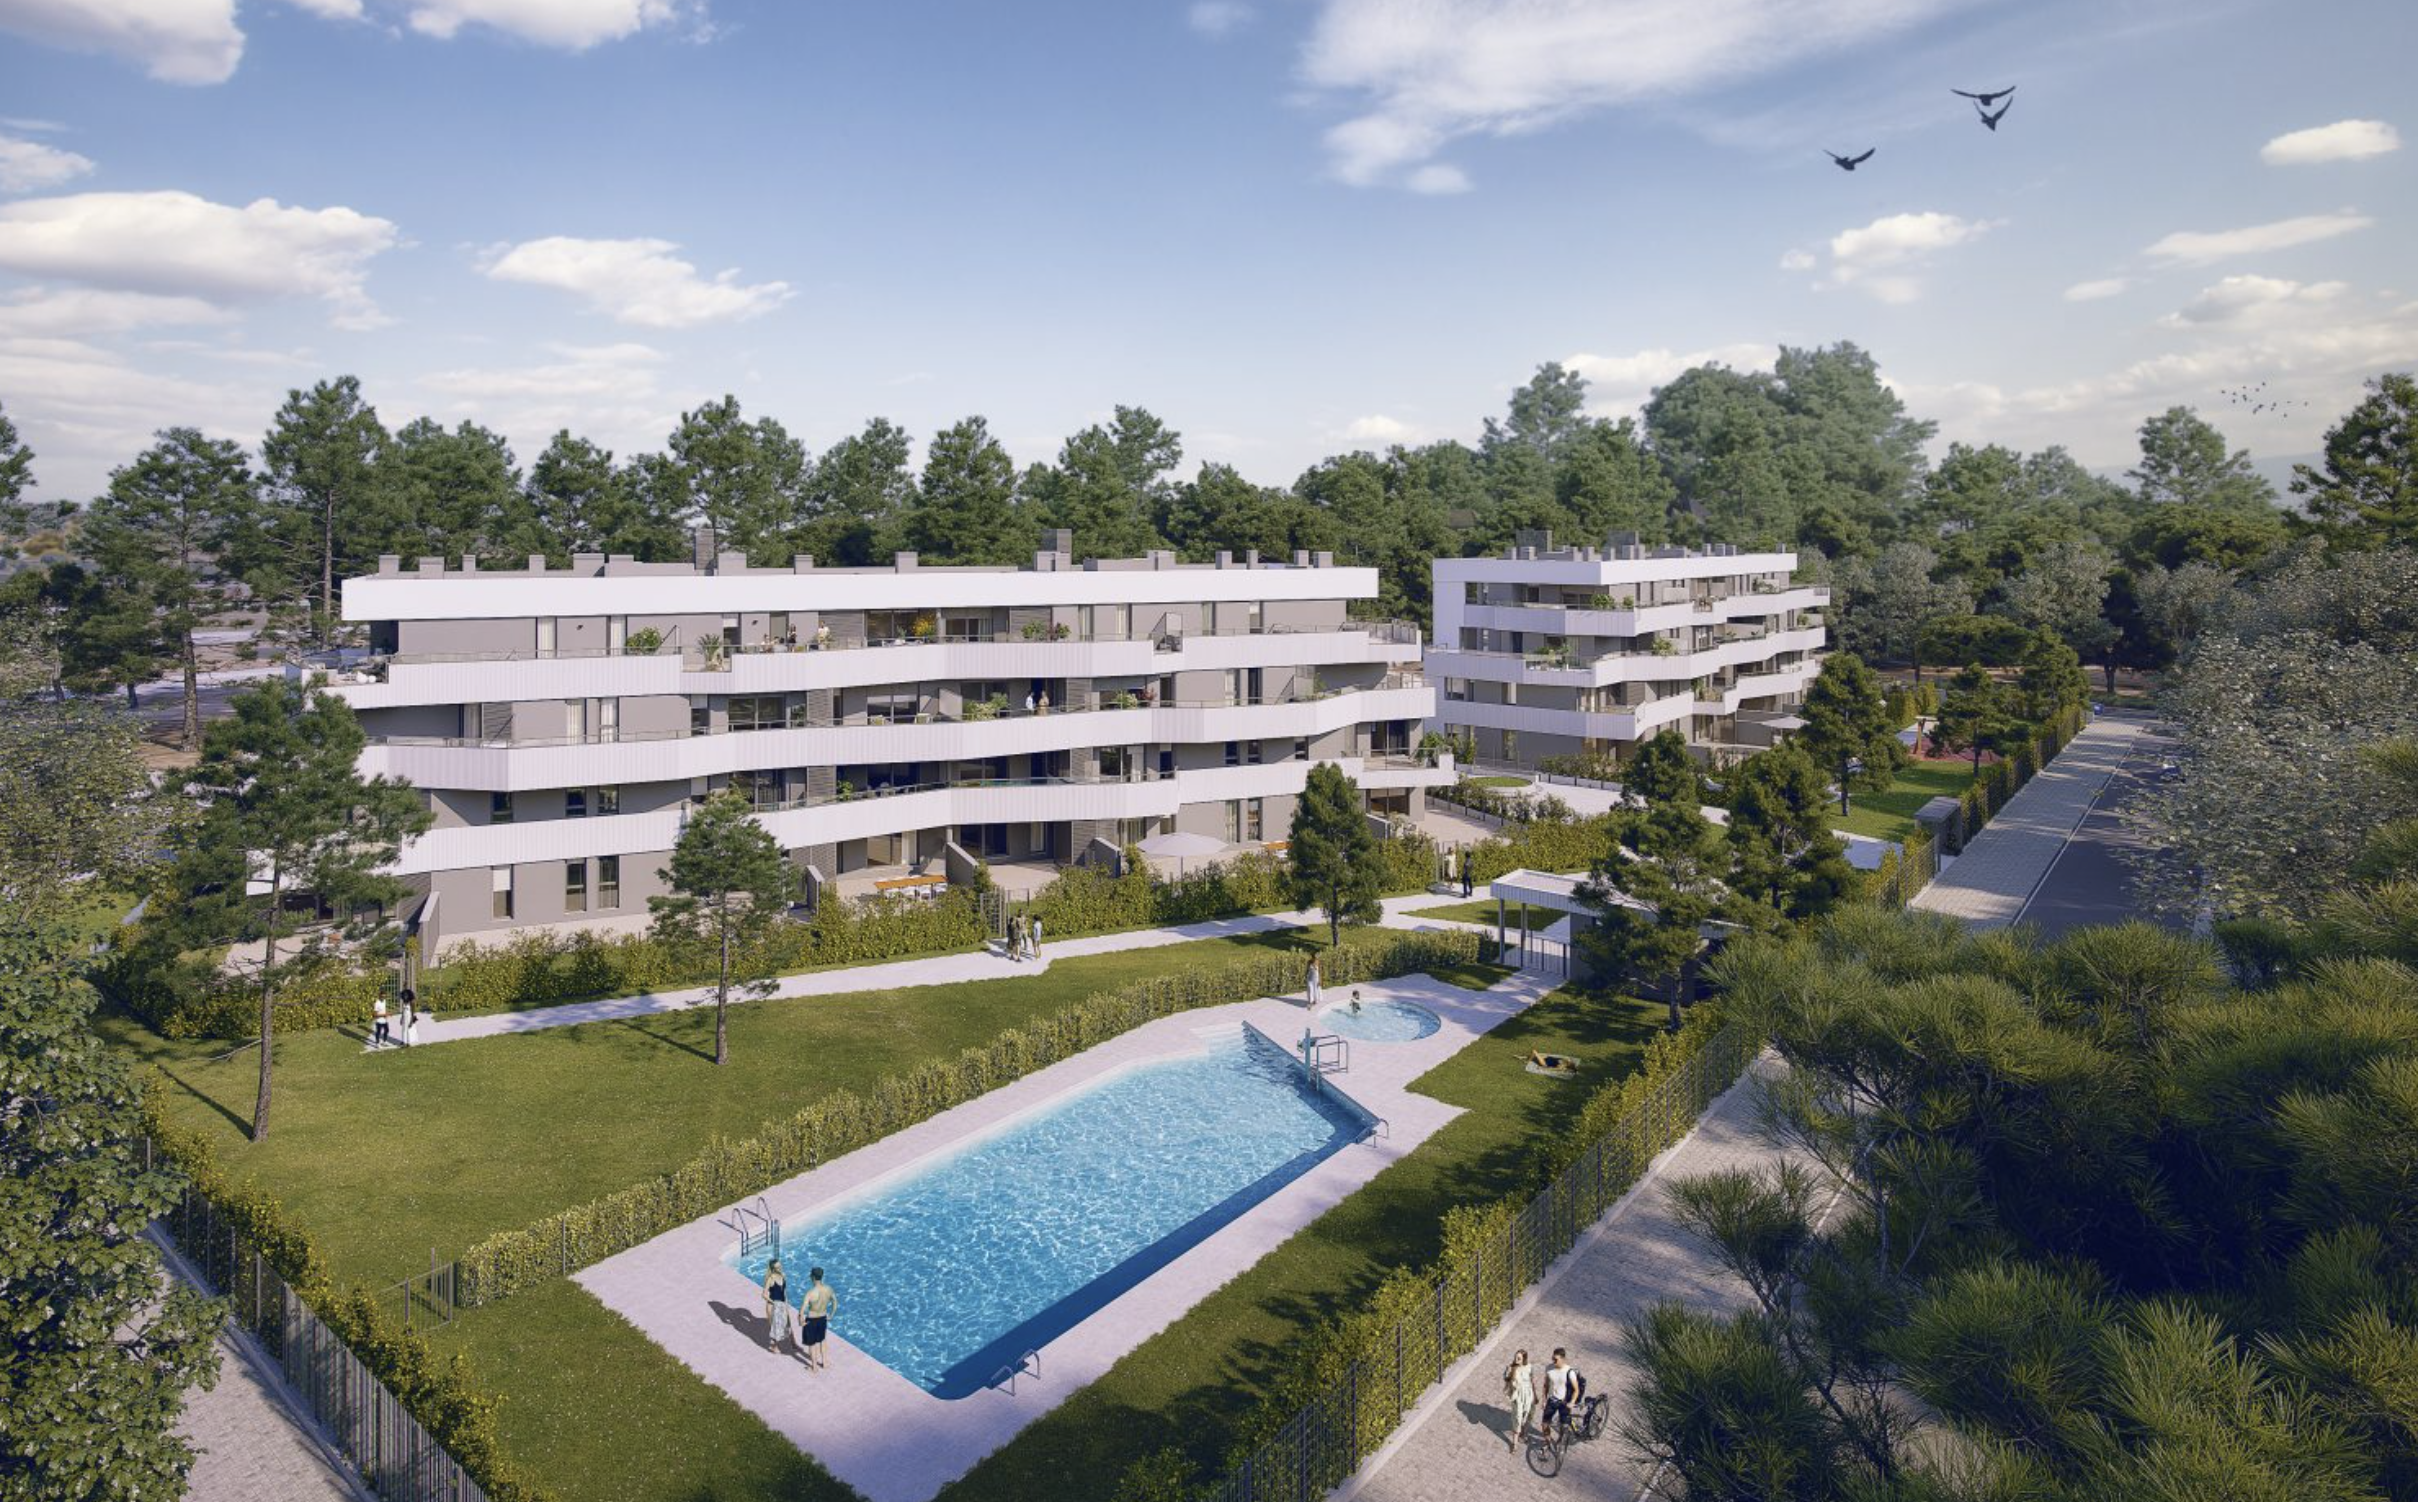 Metrovacesa impulsa 44 nuevas viviendas al norte de Jerez: áticos, piscina, jardines privados...